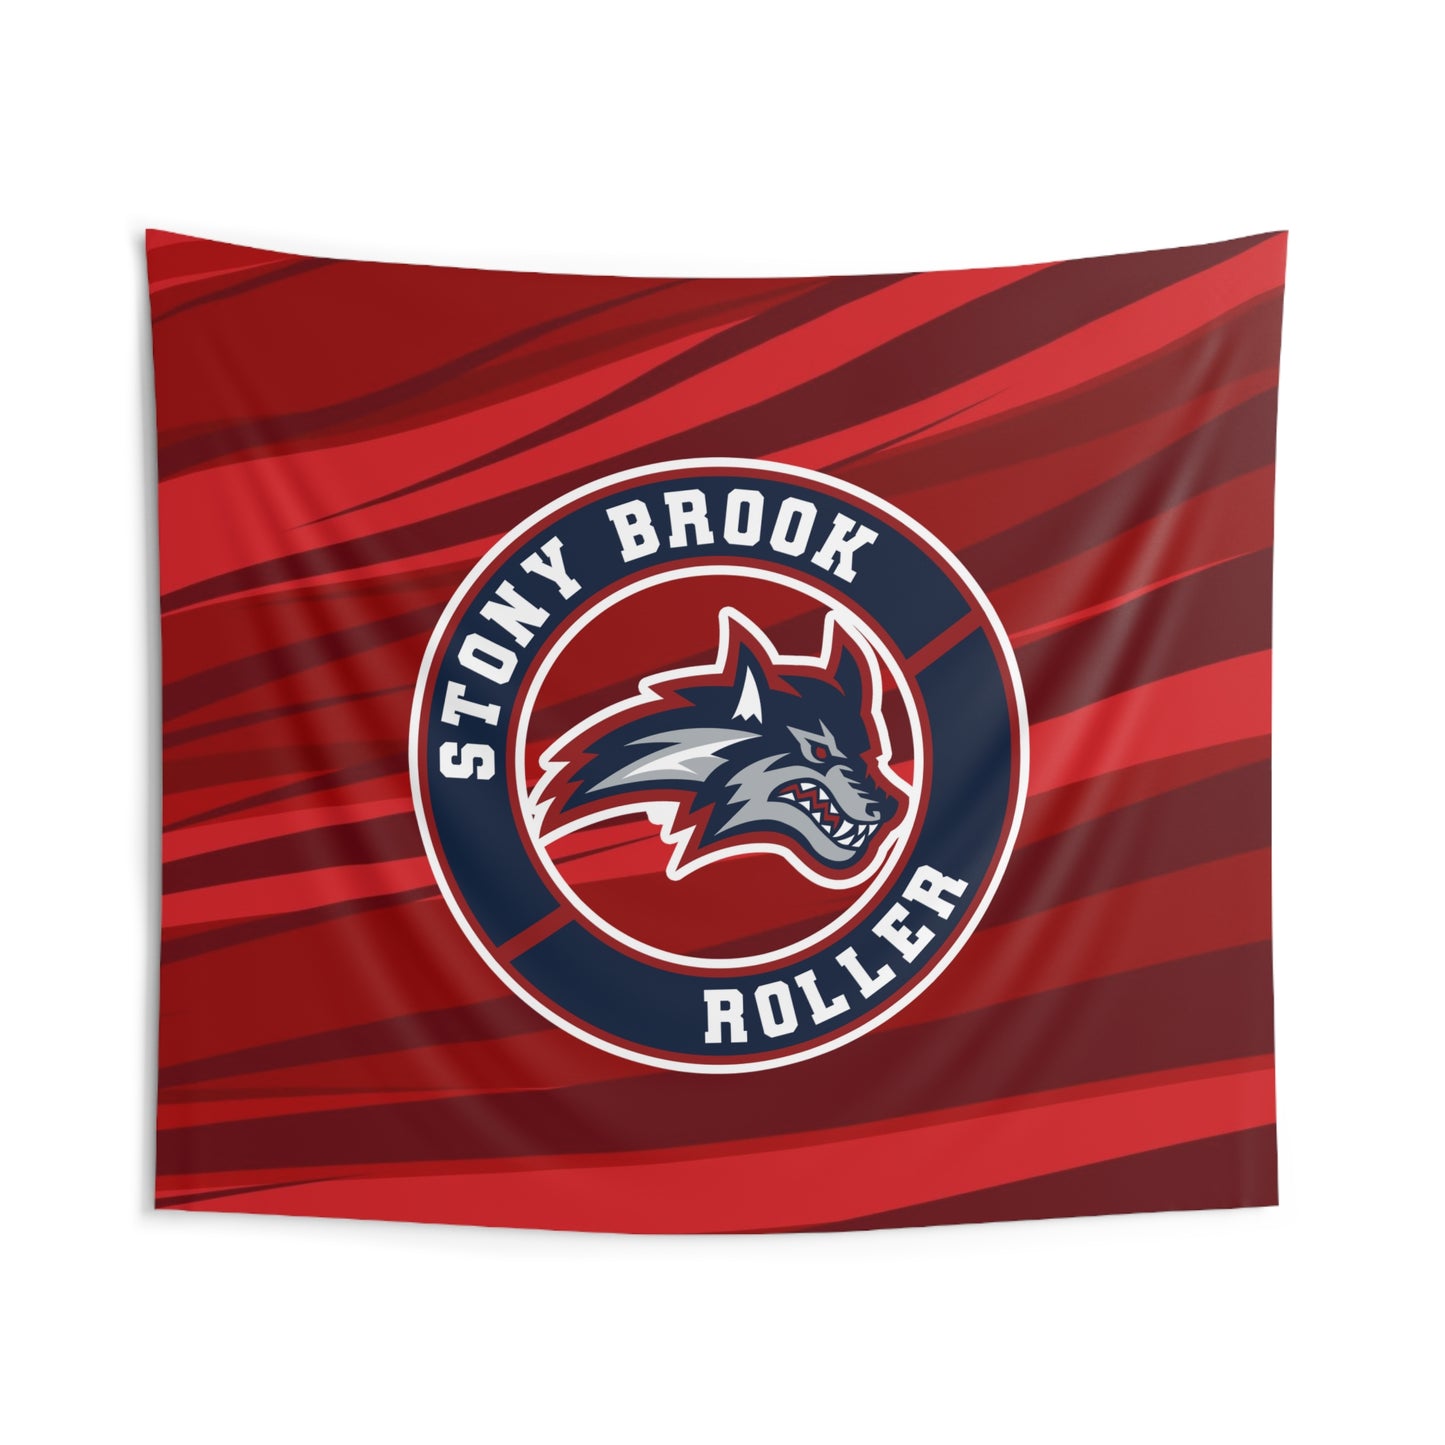 Stony Brook Flag